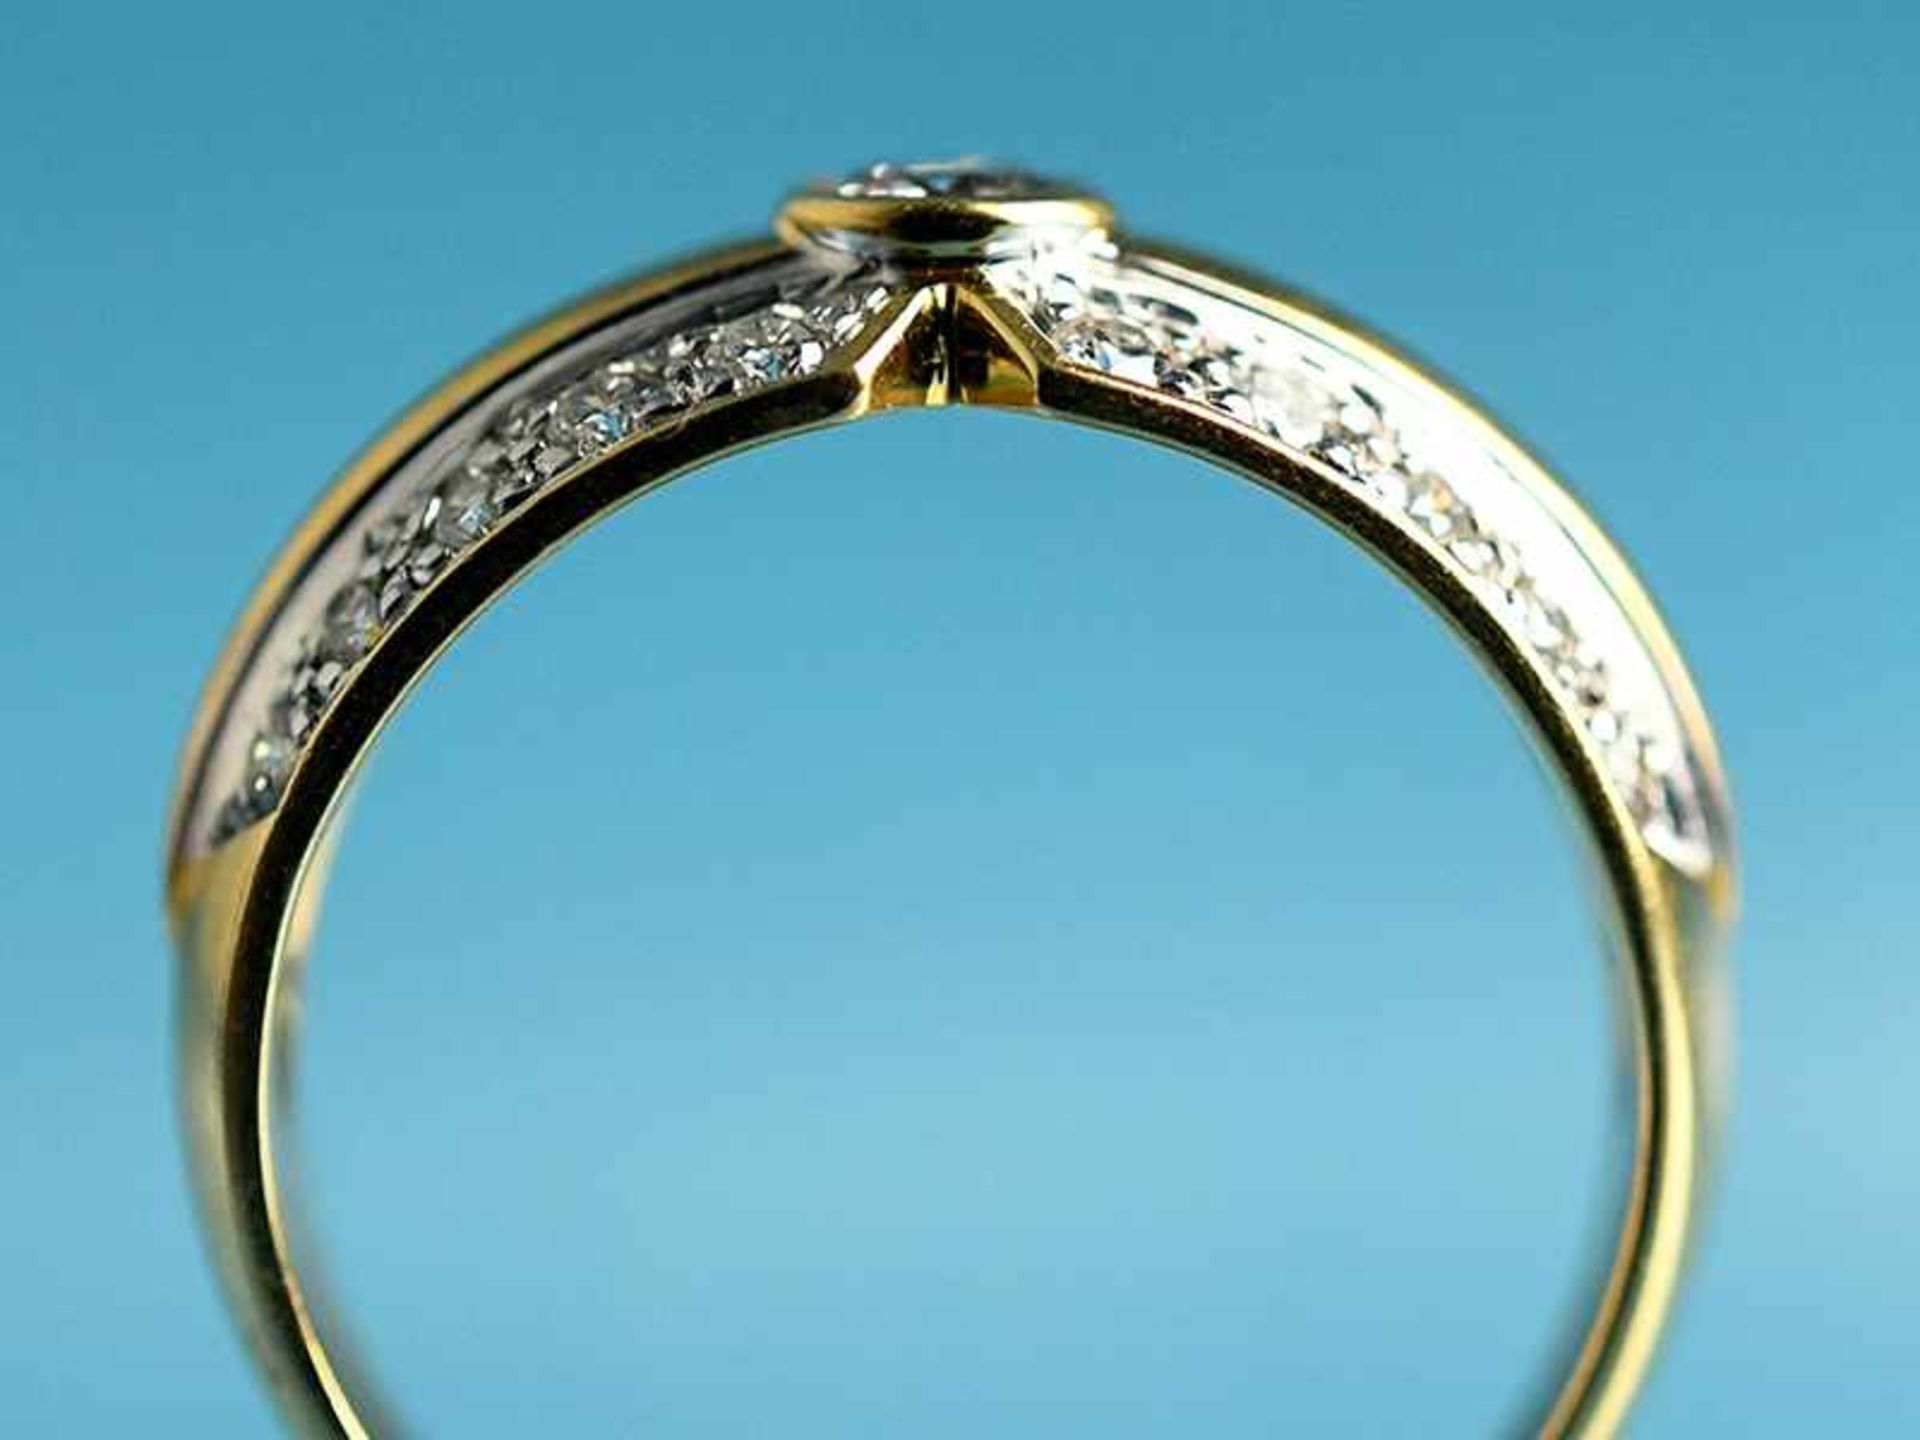 Ring mit Brillanten, zusammen ca. 0,3 ct, 21. Jh. 750/- Gelbgold. Gesamtgewicht ca. 4,2 g. - Bild 3 aus 4